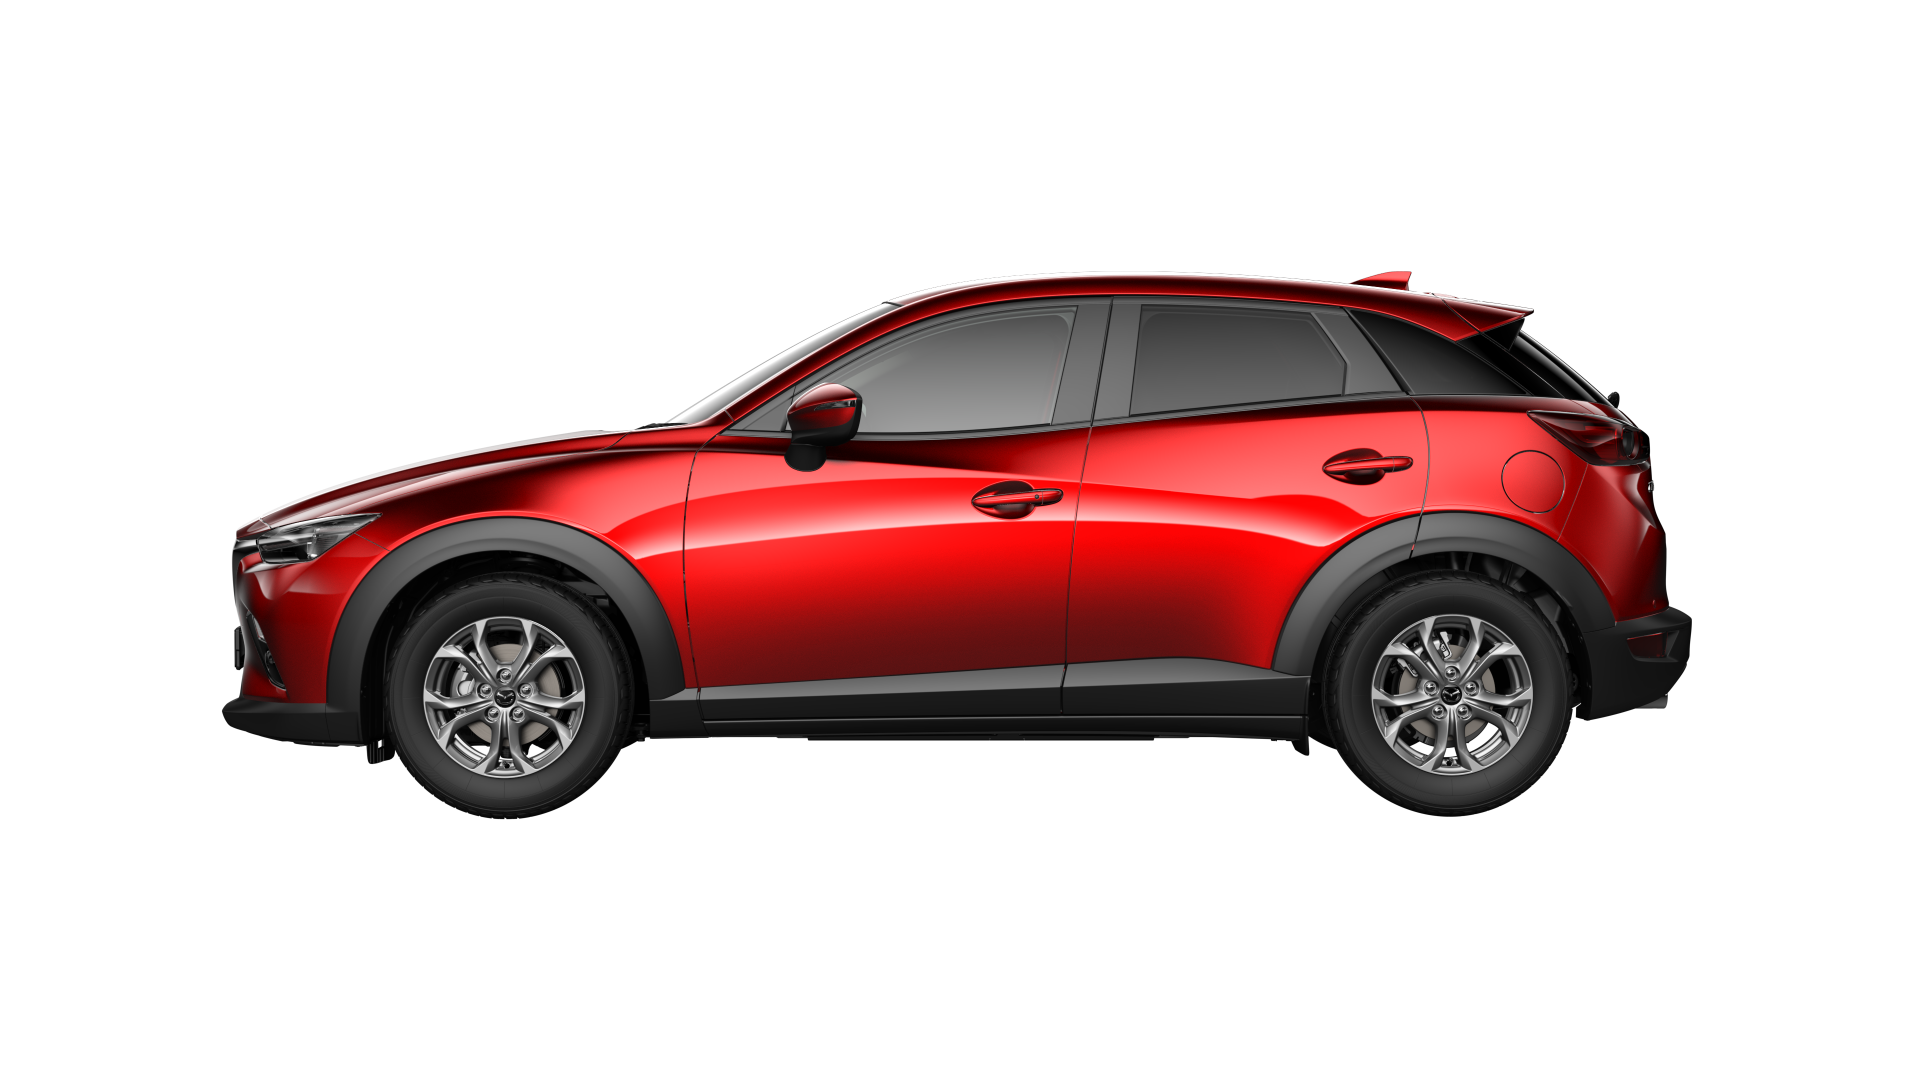 Mazda CX-3 exterior - Side Profile